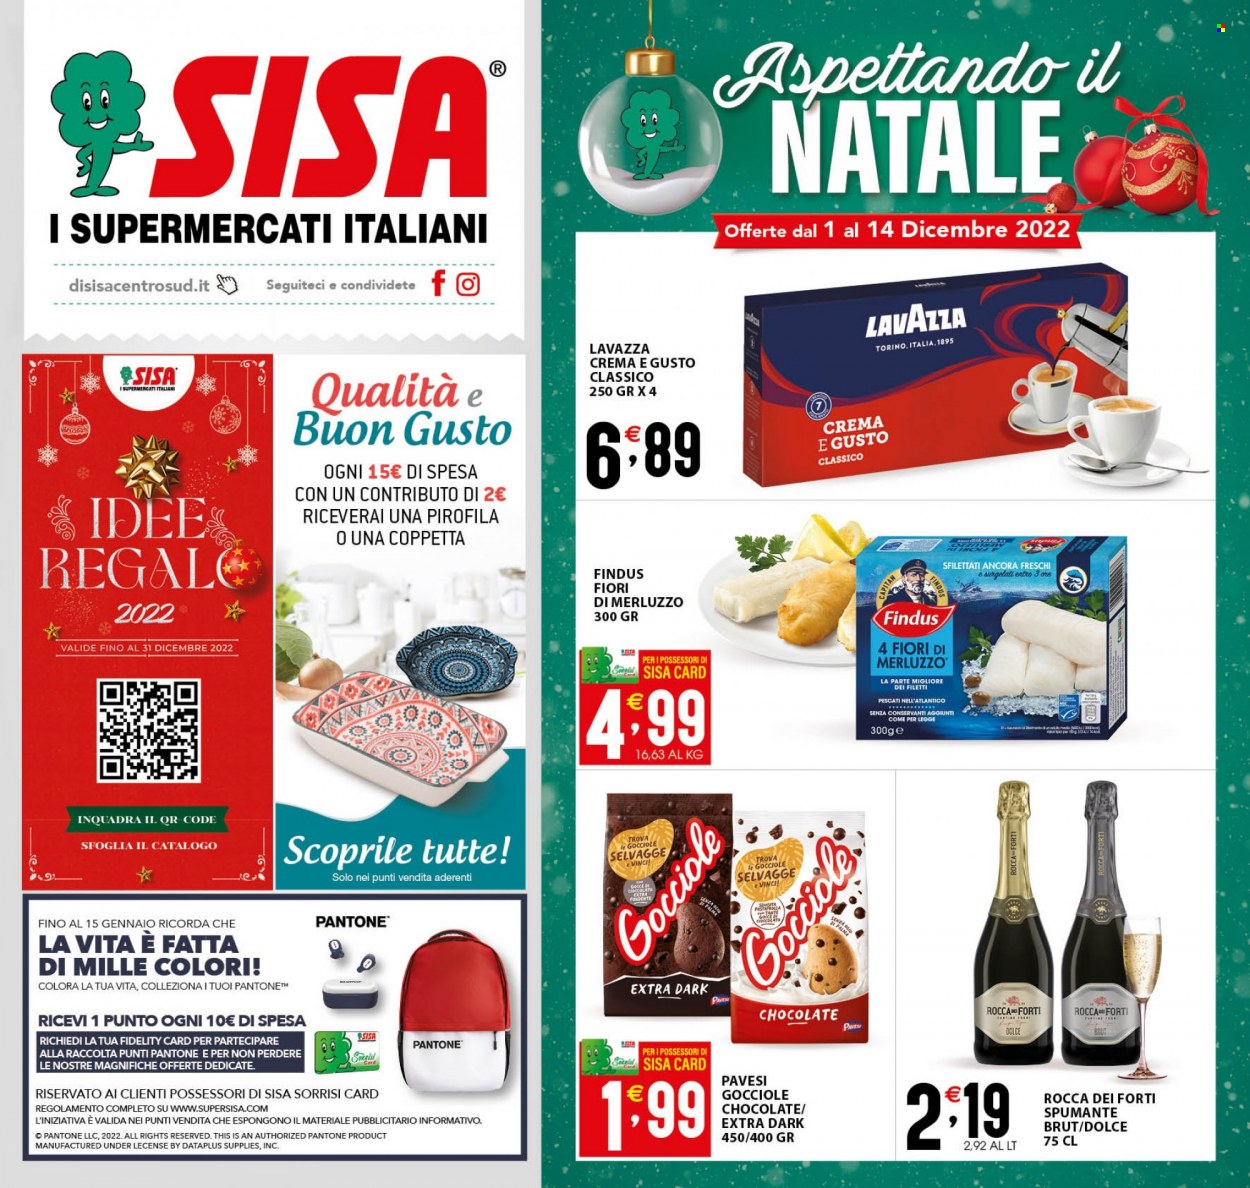 thumbnail - Volantino SISA - 1/12/2022 - 14/12/2022 - Prodotti in offerta - Findus, merluzzo, Pavesi, Lavazza, Spumante. Pagina 1.